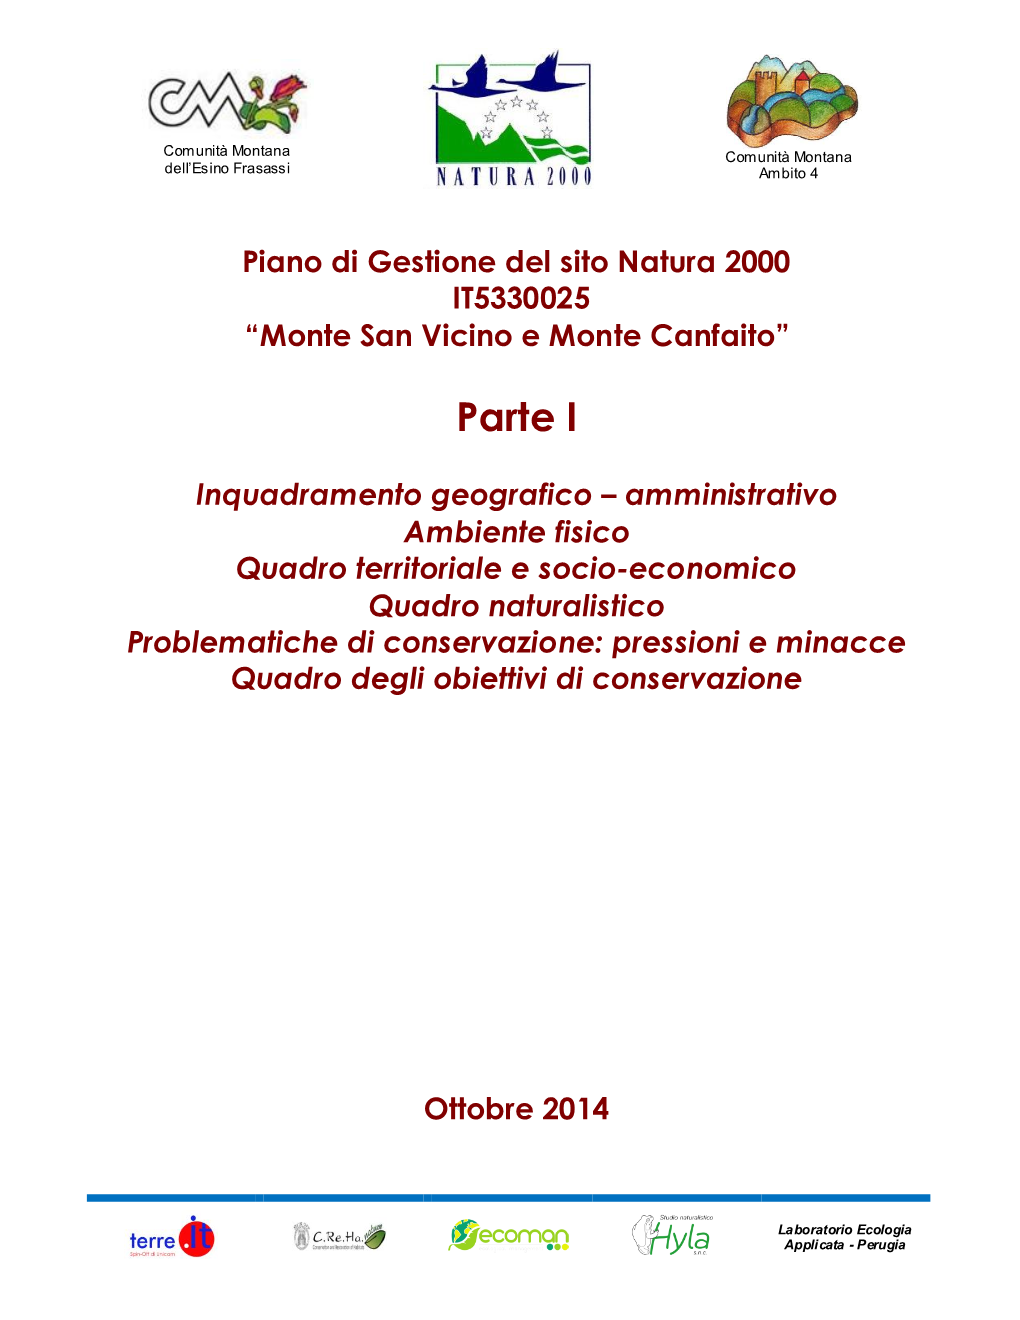 Piano Di Gestione Del Sito Natura 2000 IT5330025 “Monte San Vicino E Monte Canfaito”